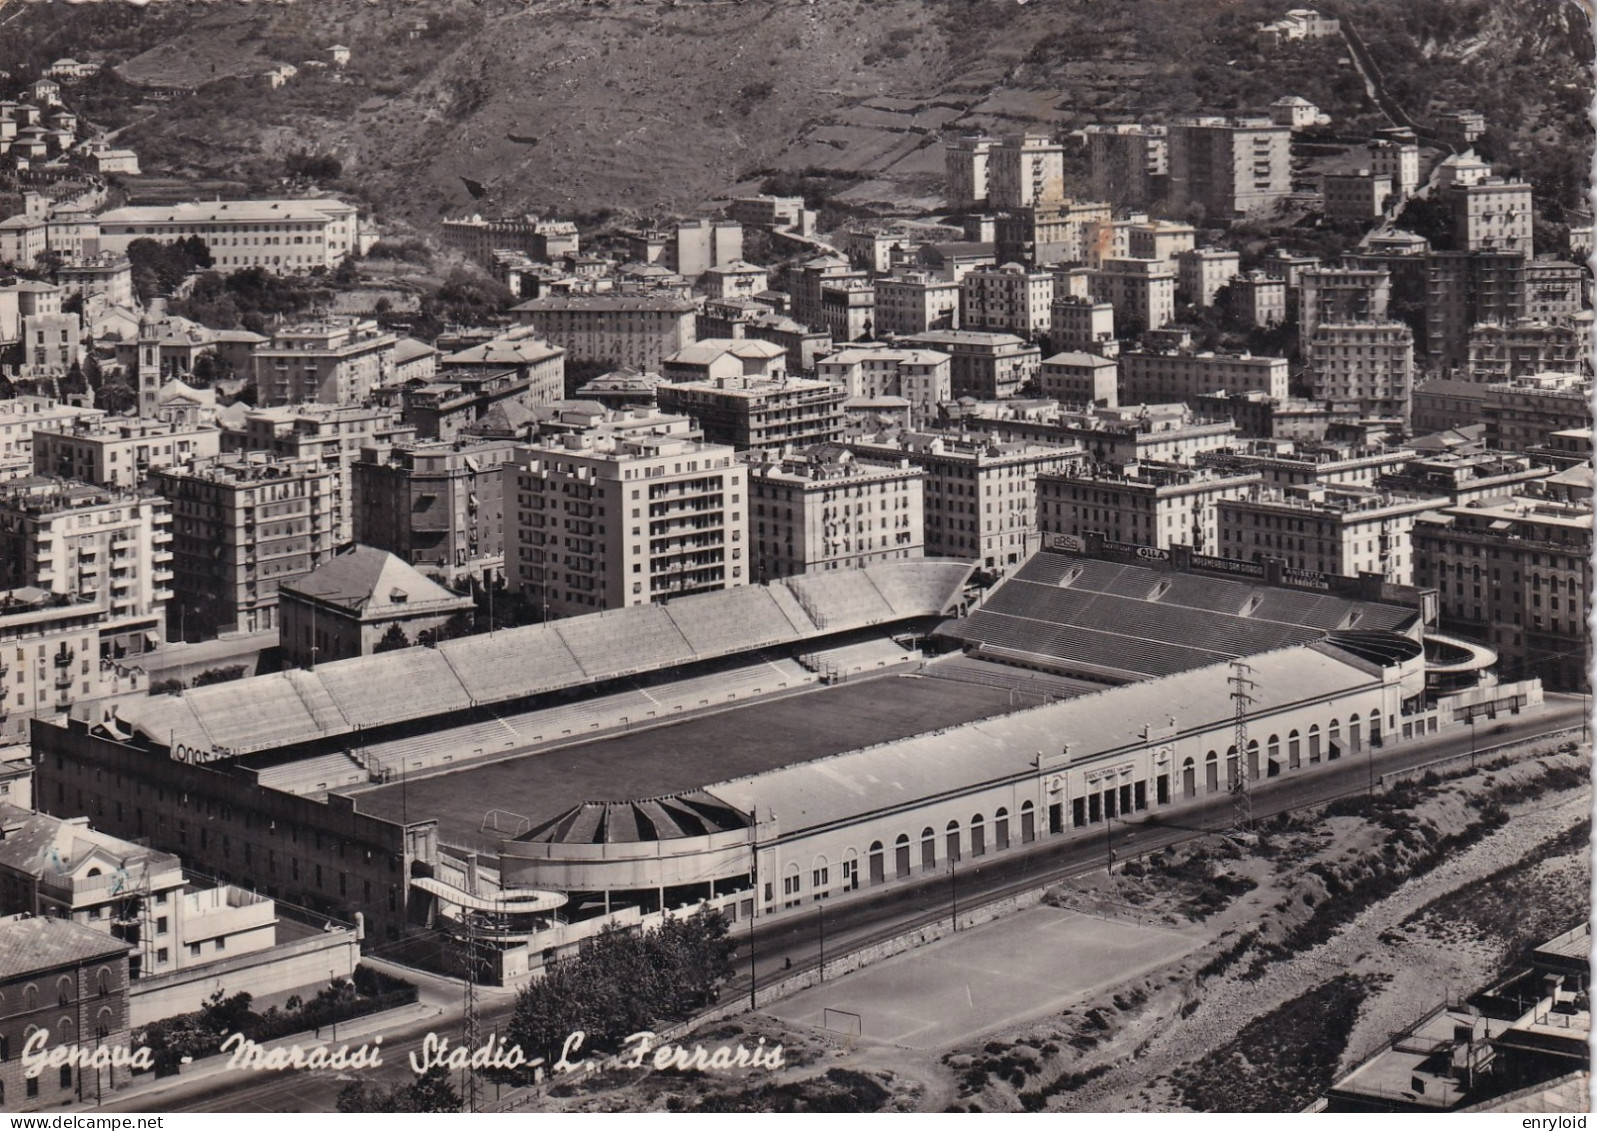 Genova Marassi Stadio Ferraris - Genova (Genoa)